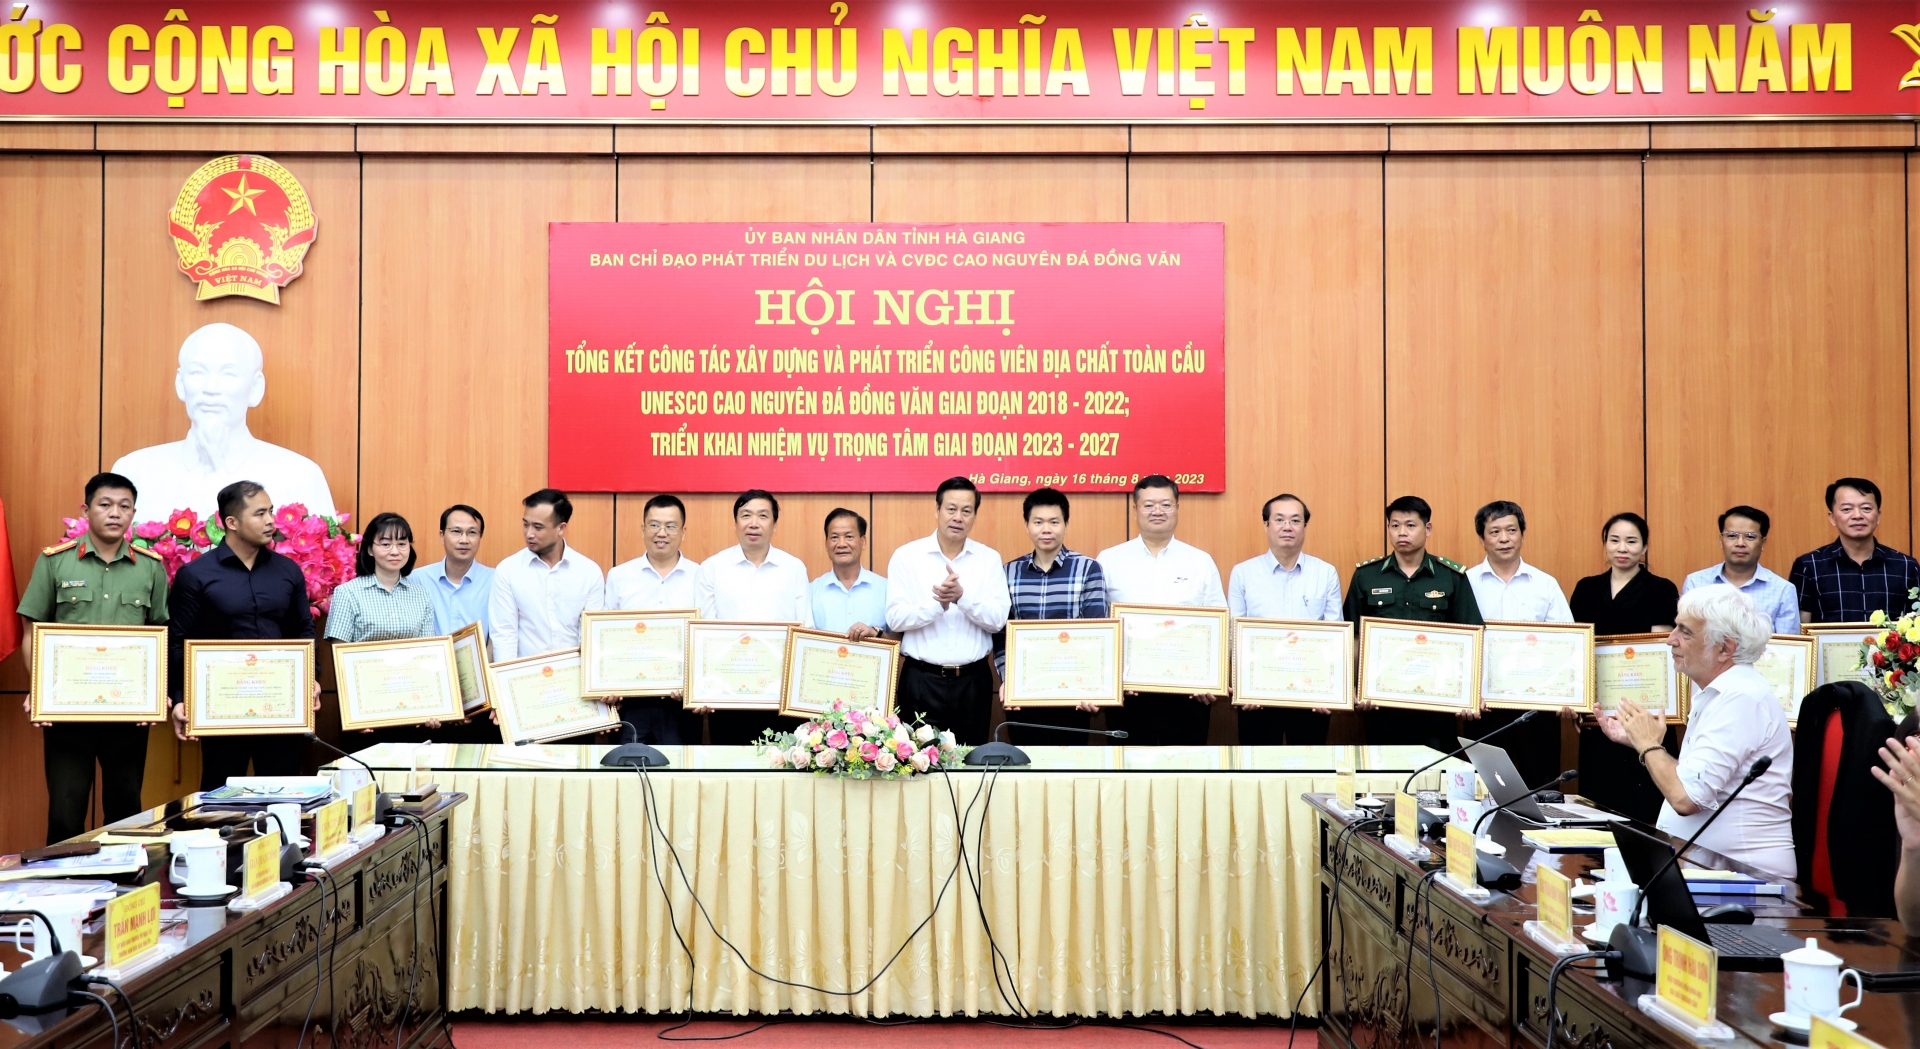 Hà Giang: Tổng kết công tác xây dựng và phát triển Công viên Địa chất toàn cầu Unesco Cao nguyên đá Đồng Văn giai đoạn 2018 – 2022 - Ảnh 7.